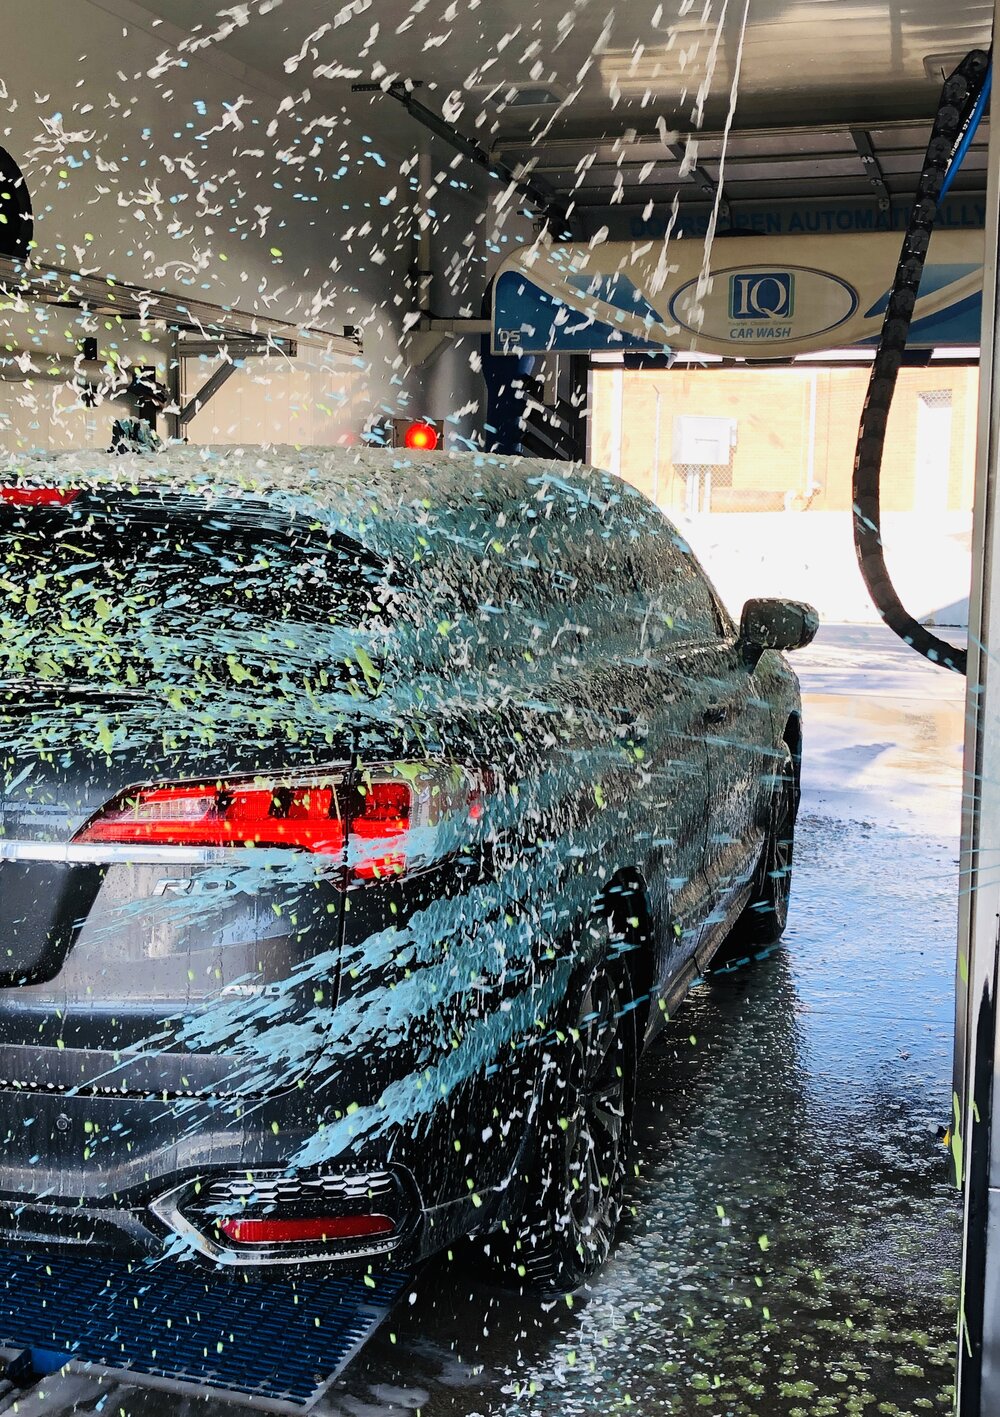 Salem Car Wash